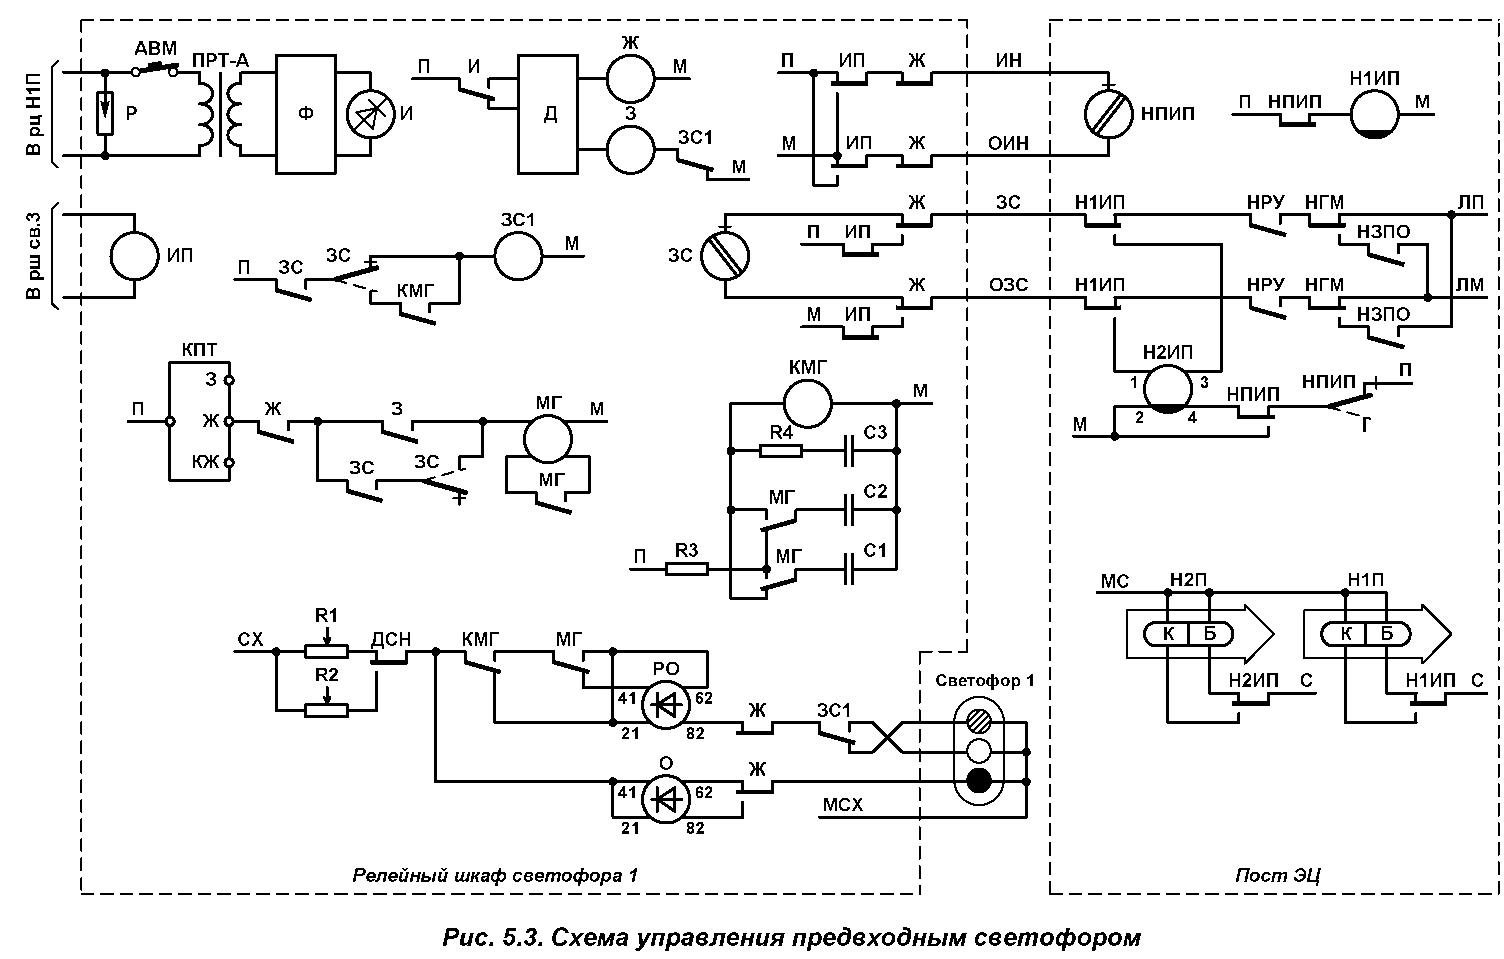 Схема управления огнями входного светофора БМРЦ